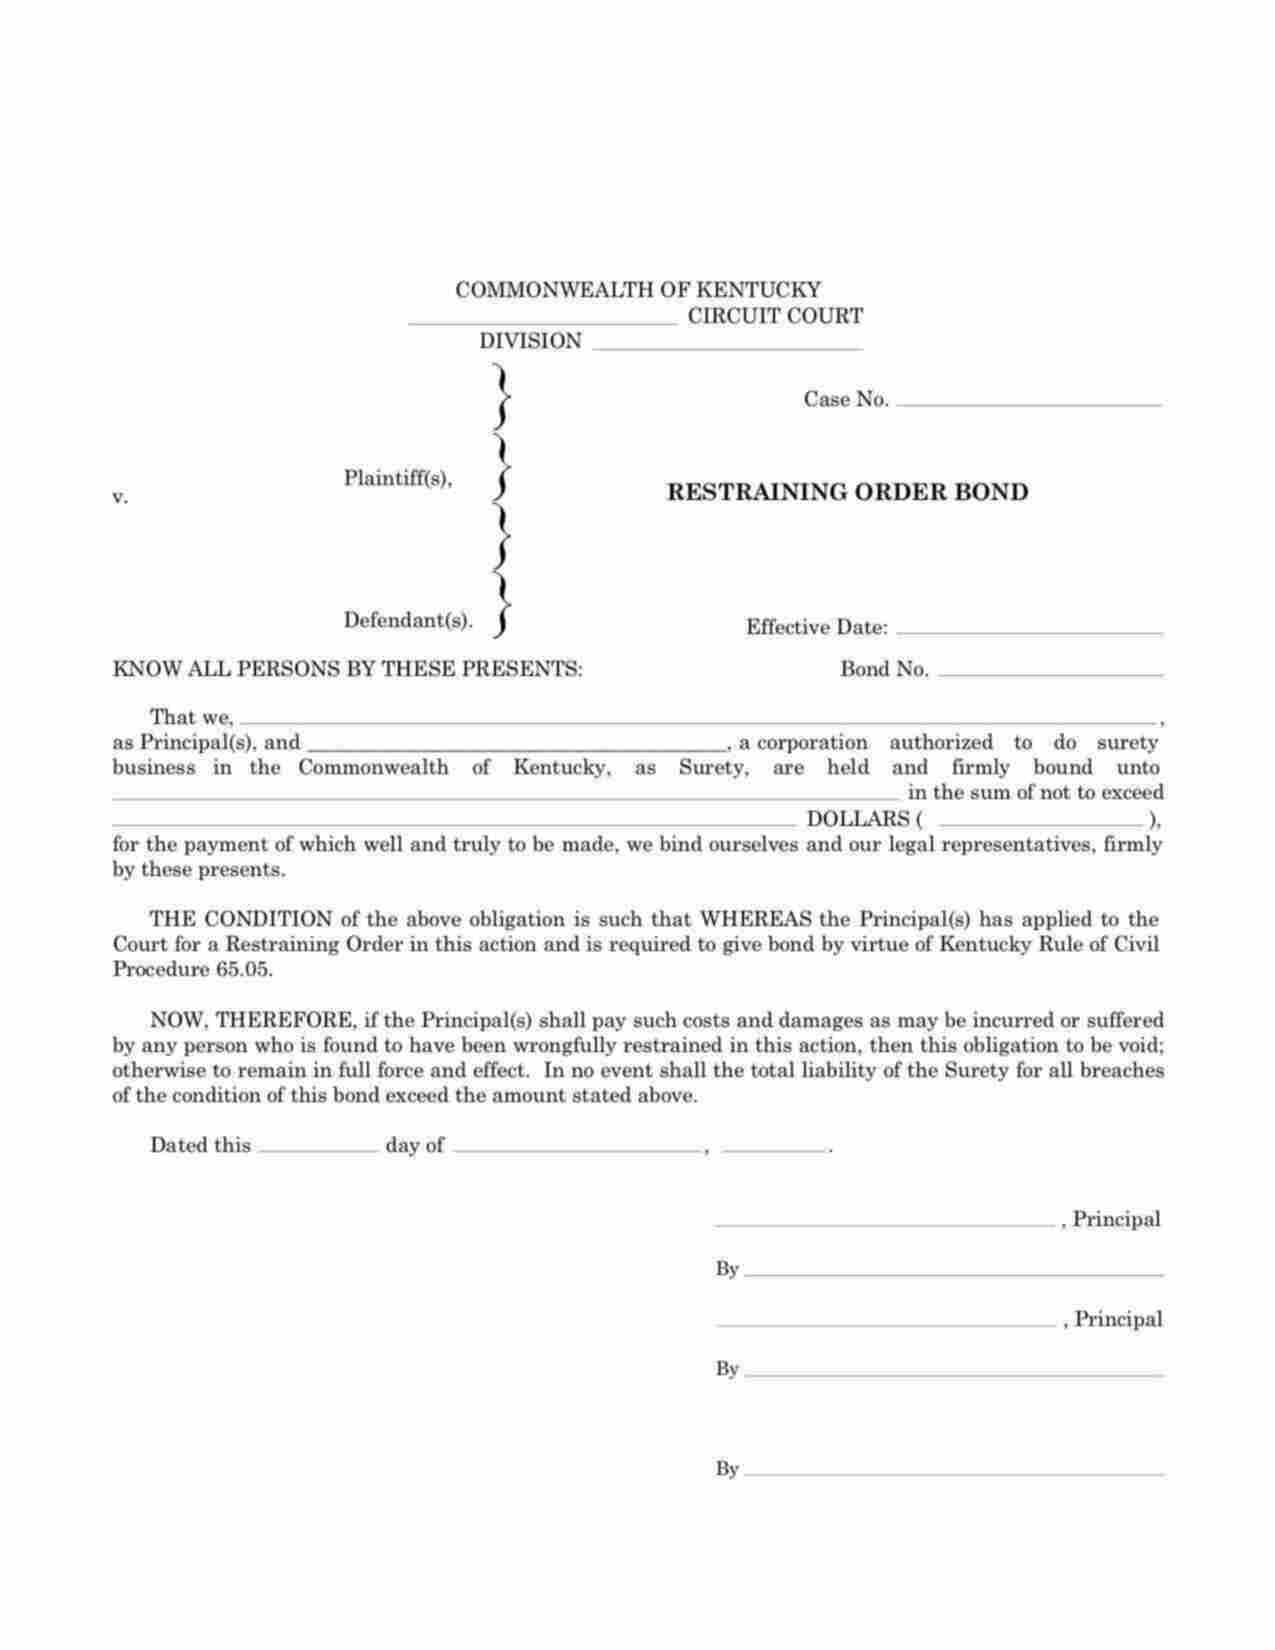 Kentucky Restraining Order Bond Form